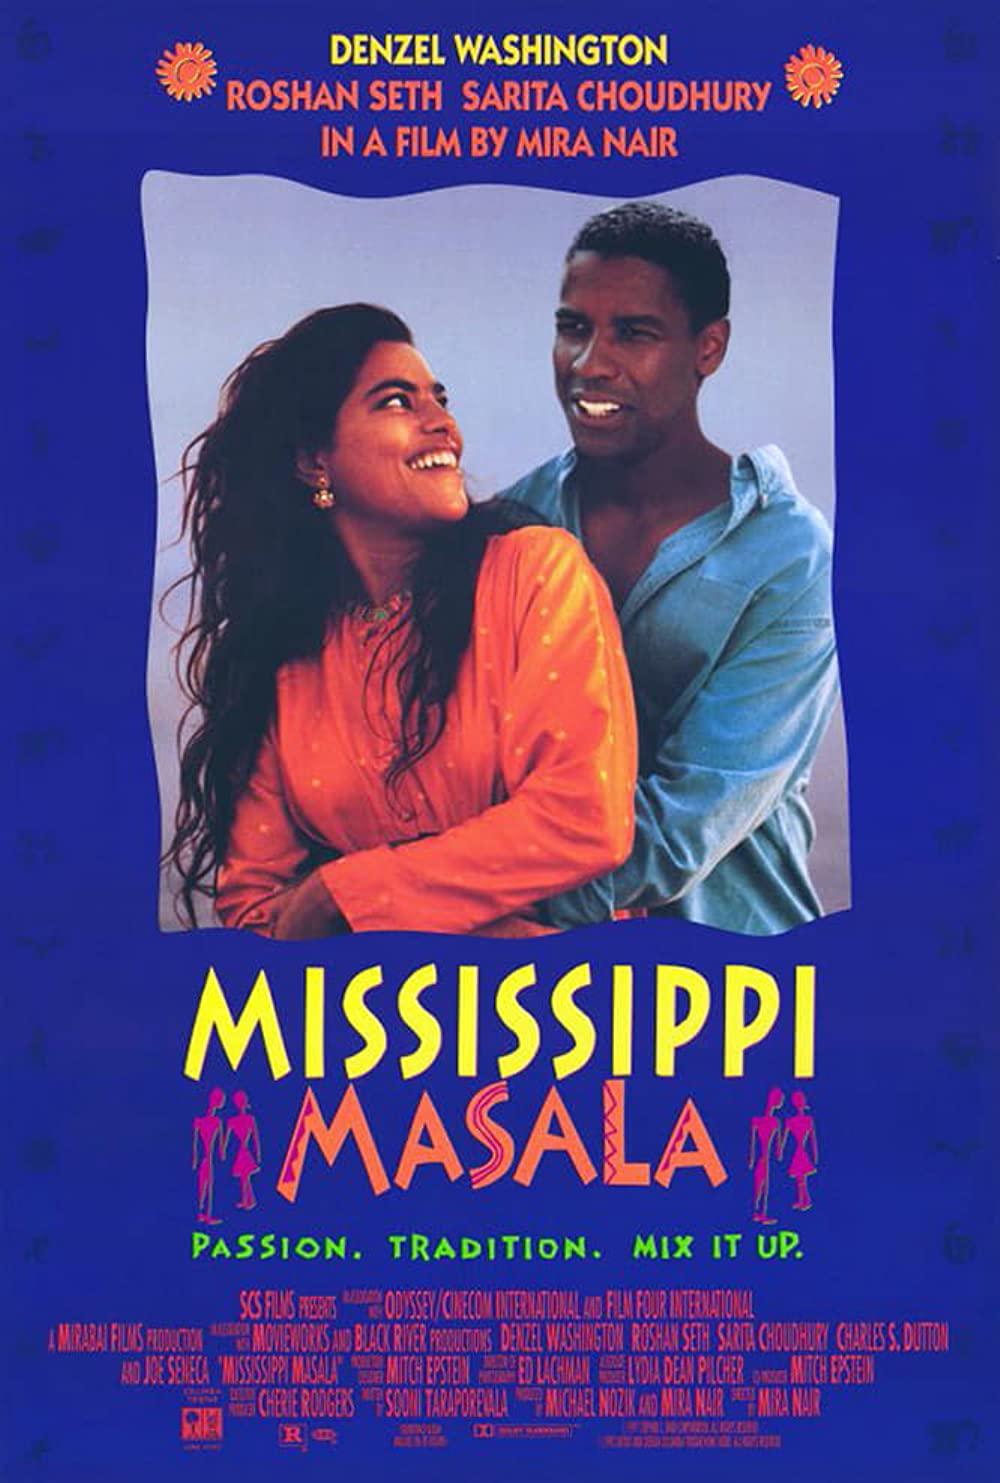 Filmbeschreibung zu Mississippi Masala